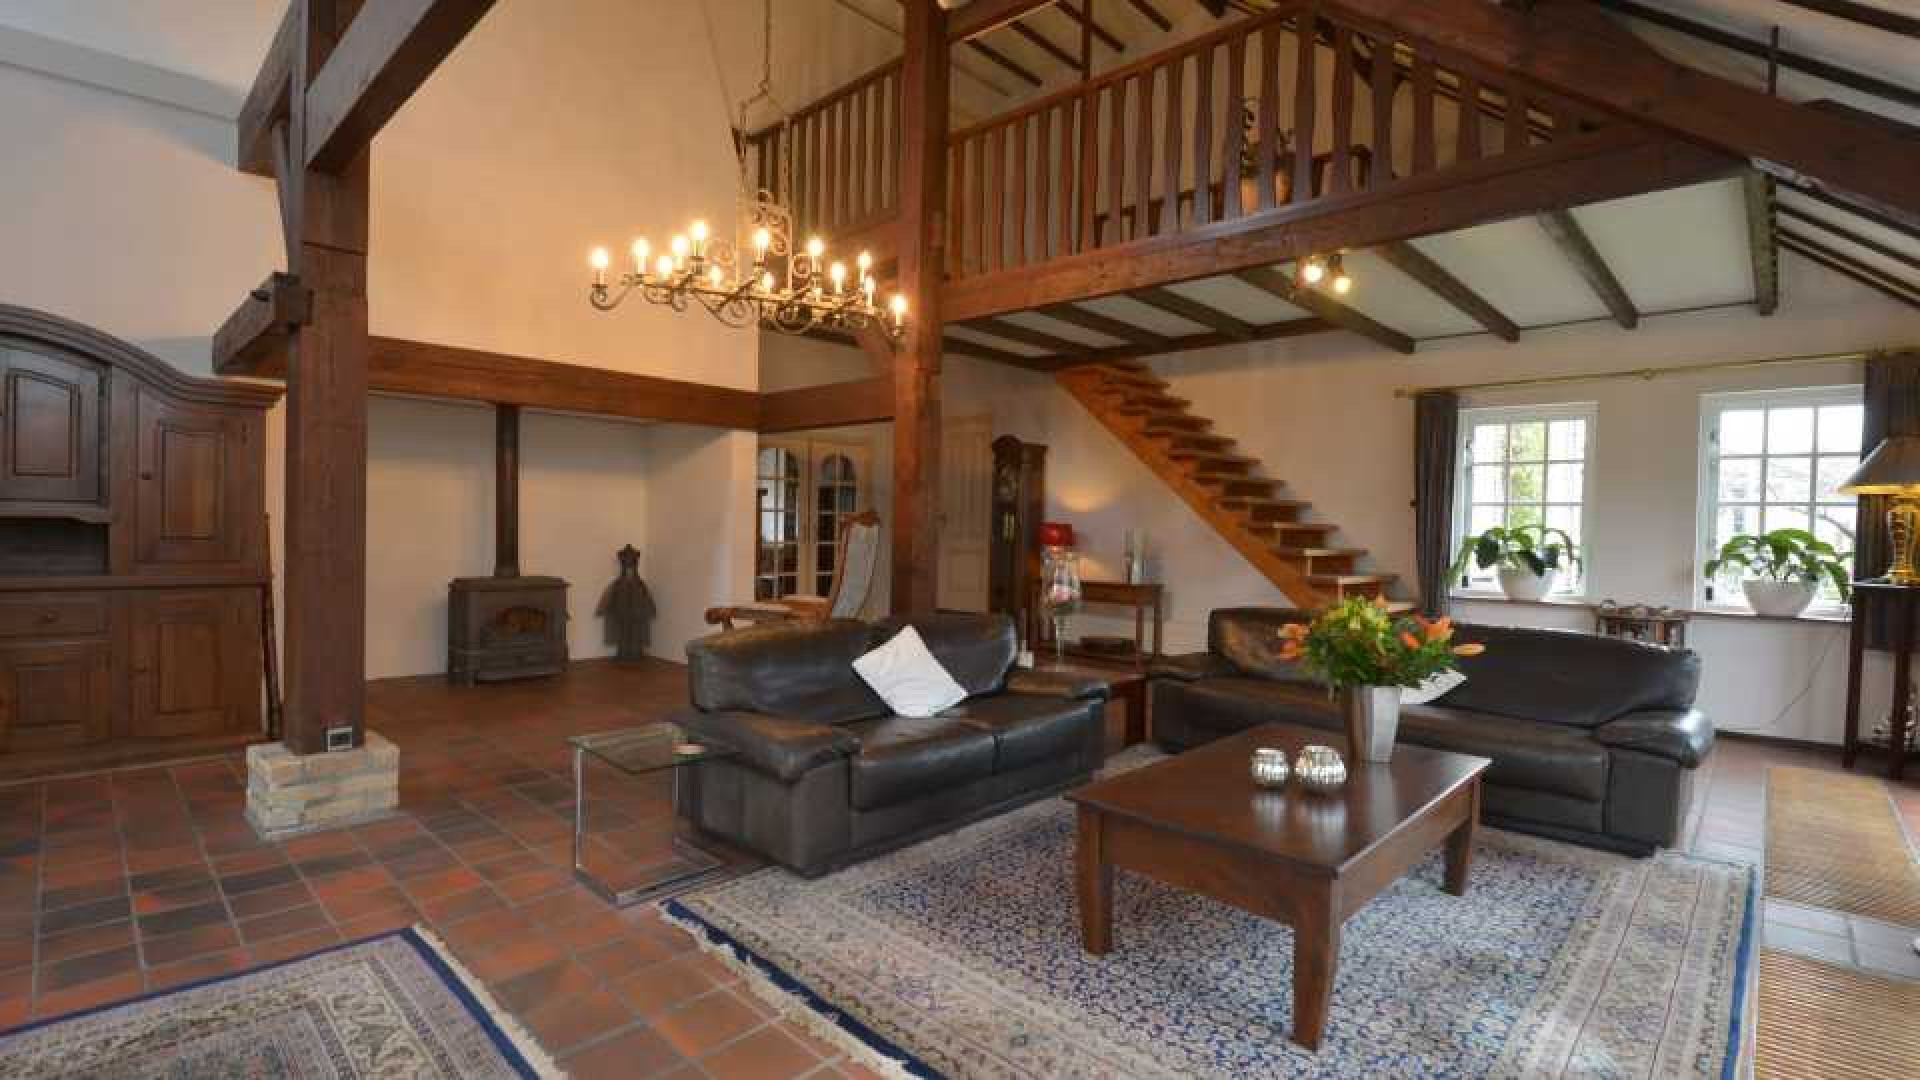 Michael van Gerwen huurt luxe woonboerderij. Zie foto's 7